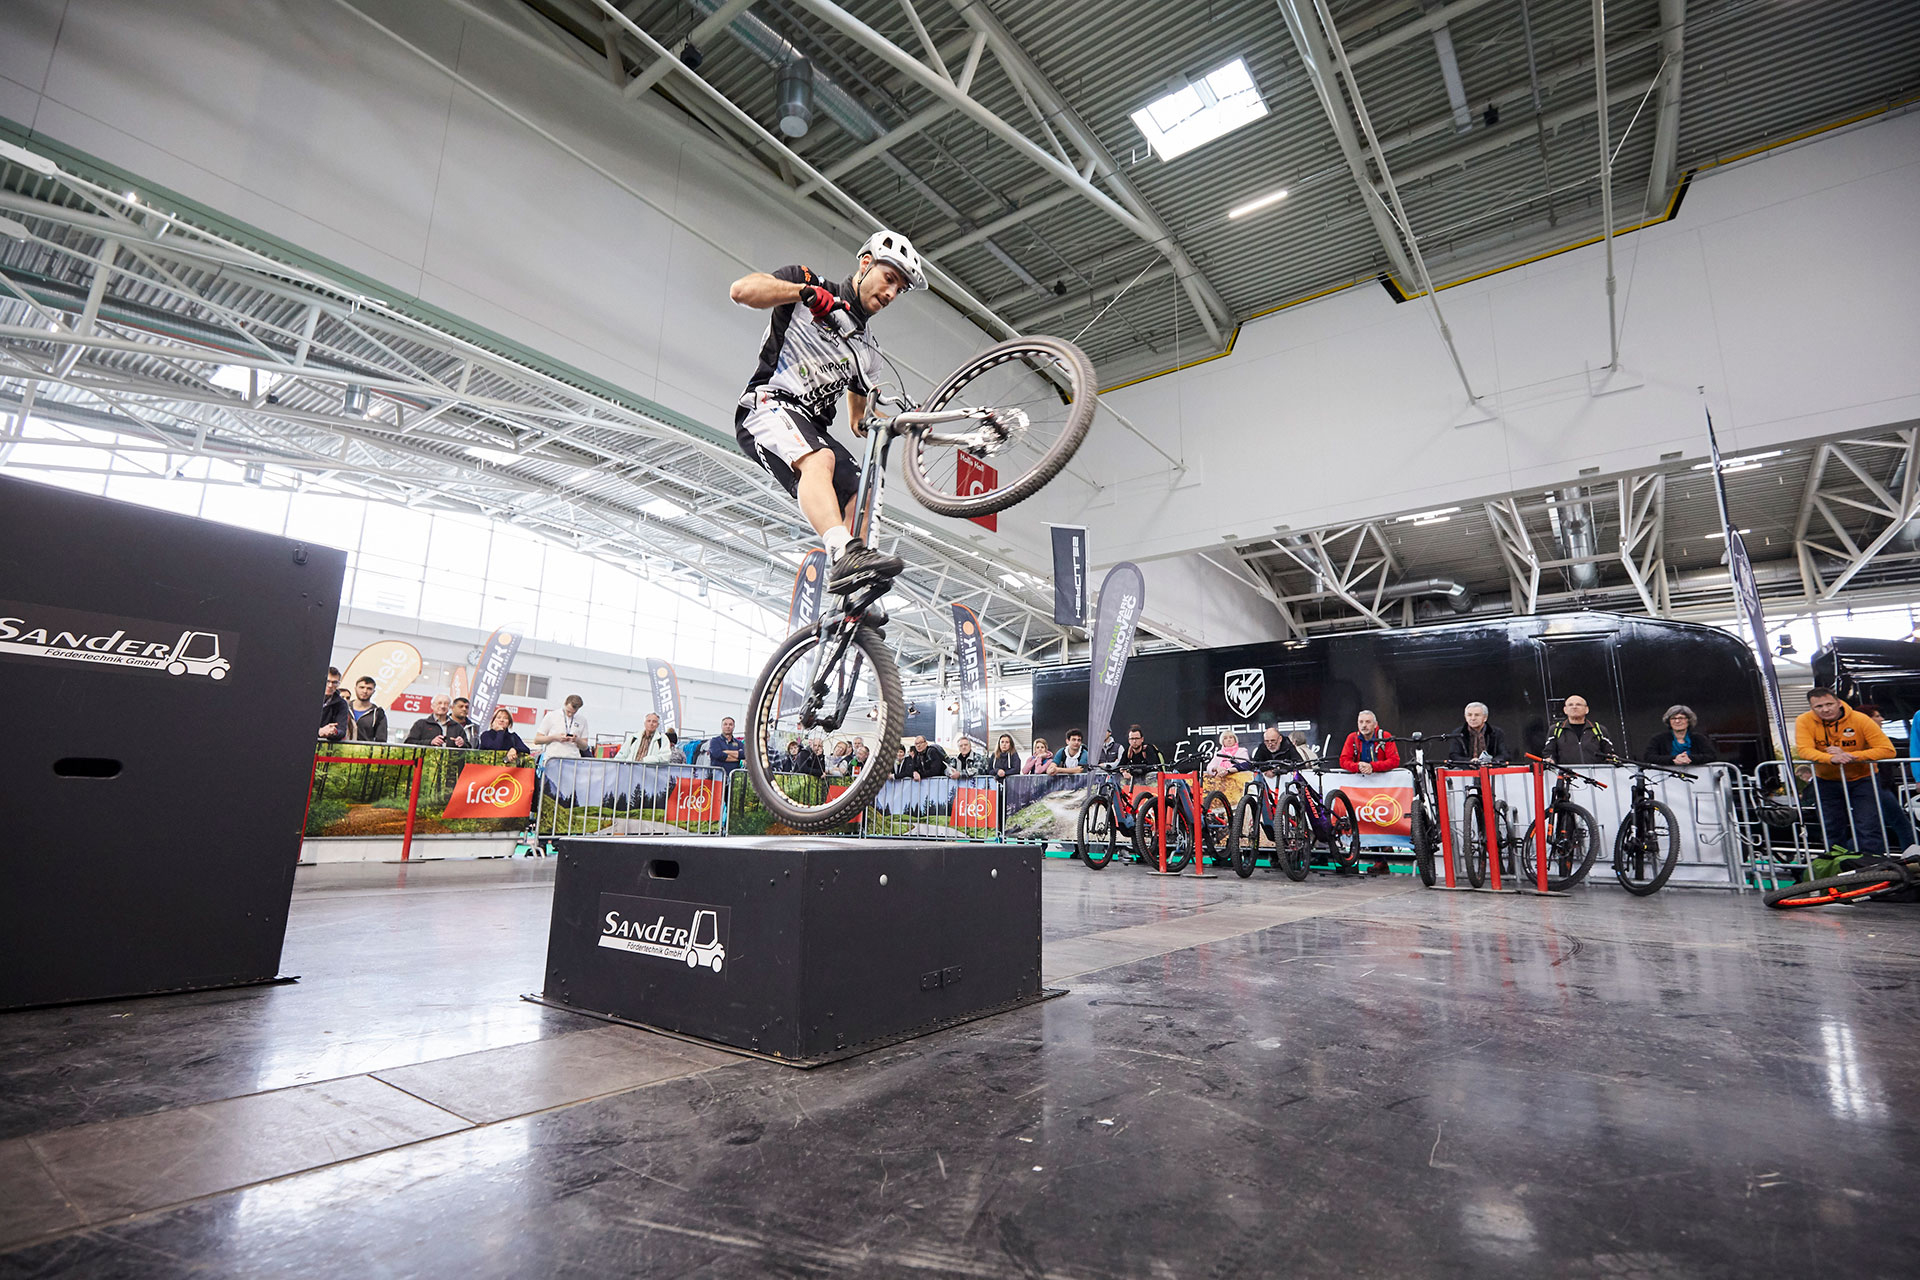 Action pur bei der täglichen Trial-Bike Show in Halle C6